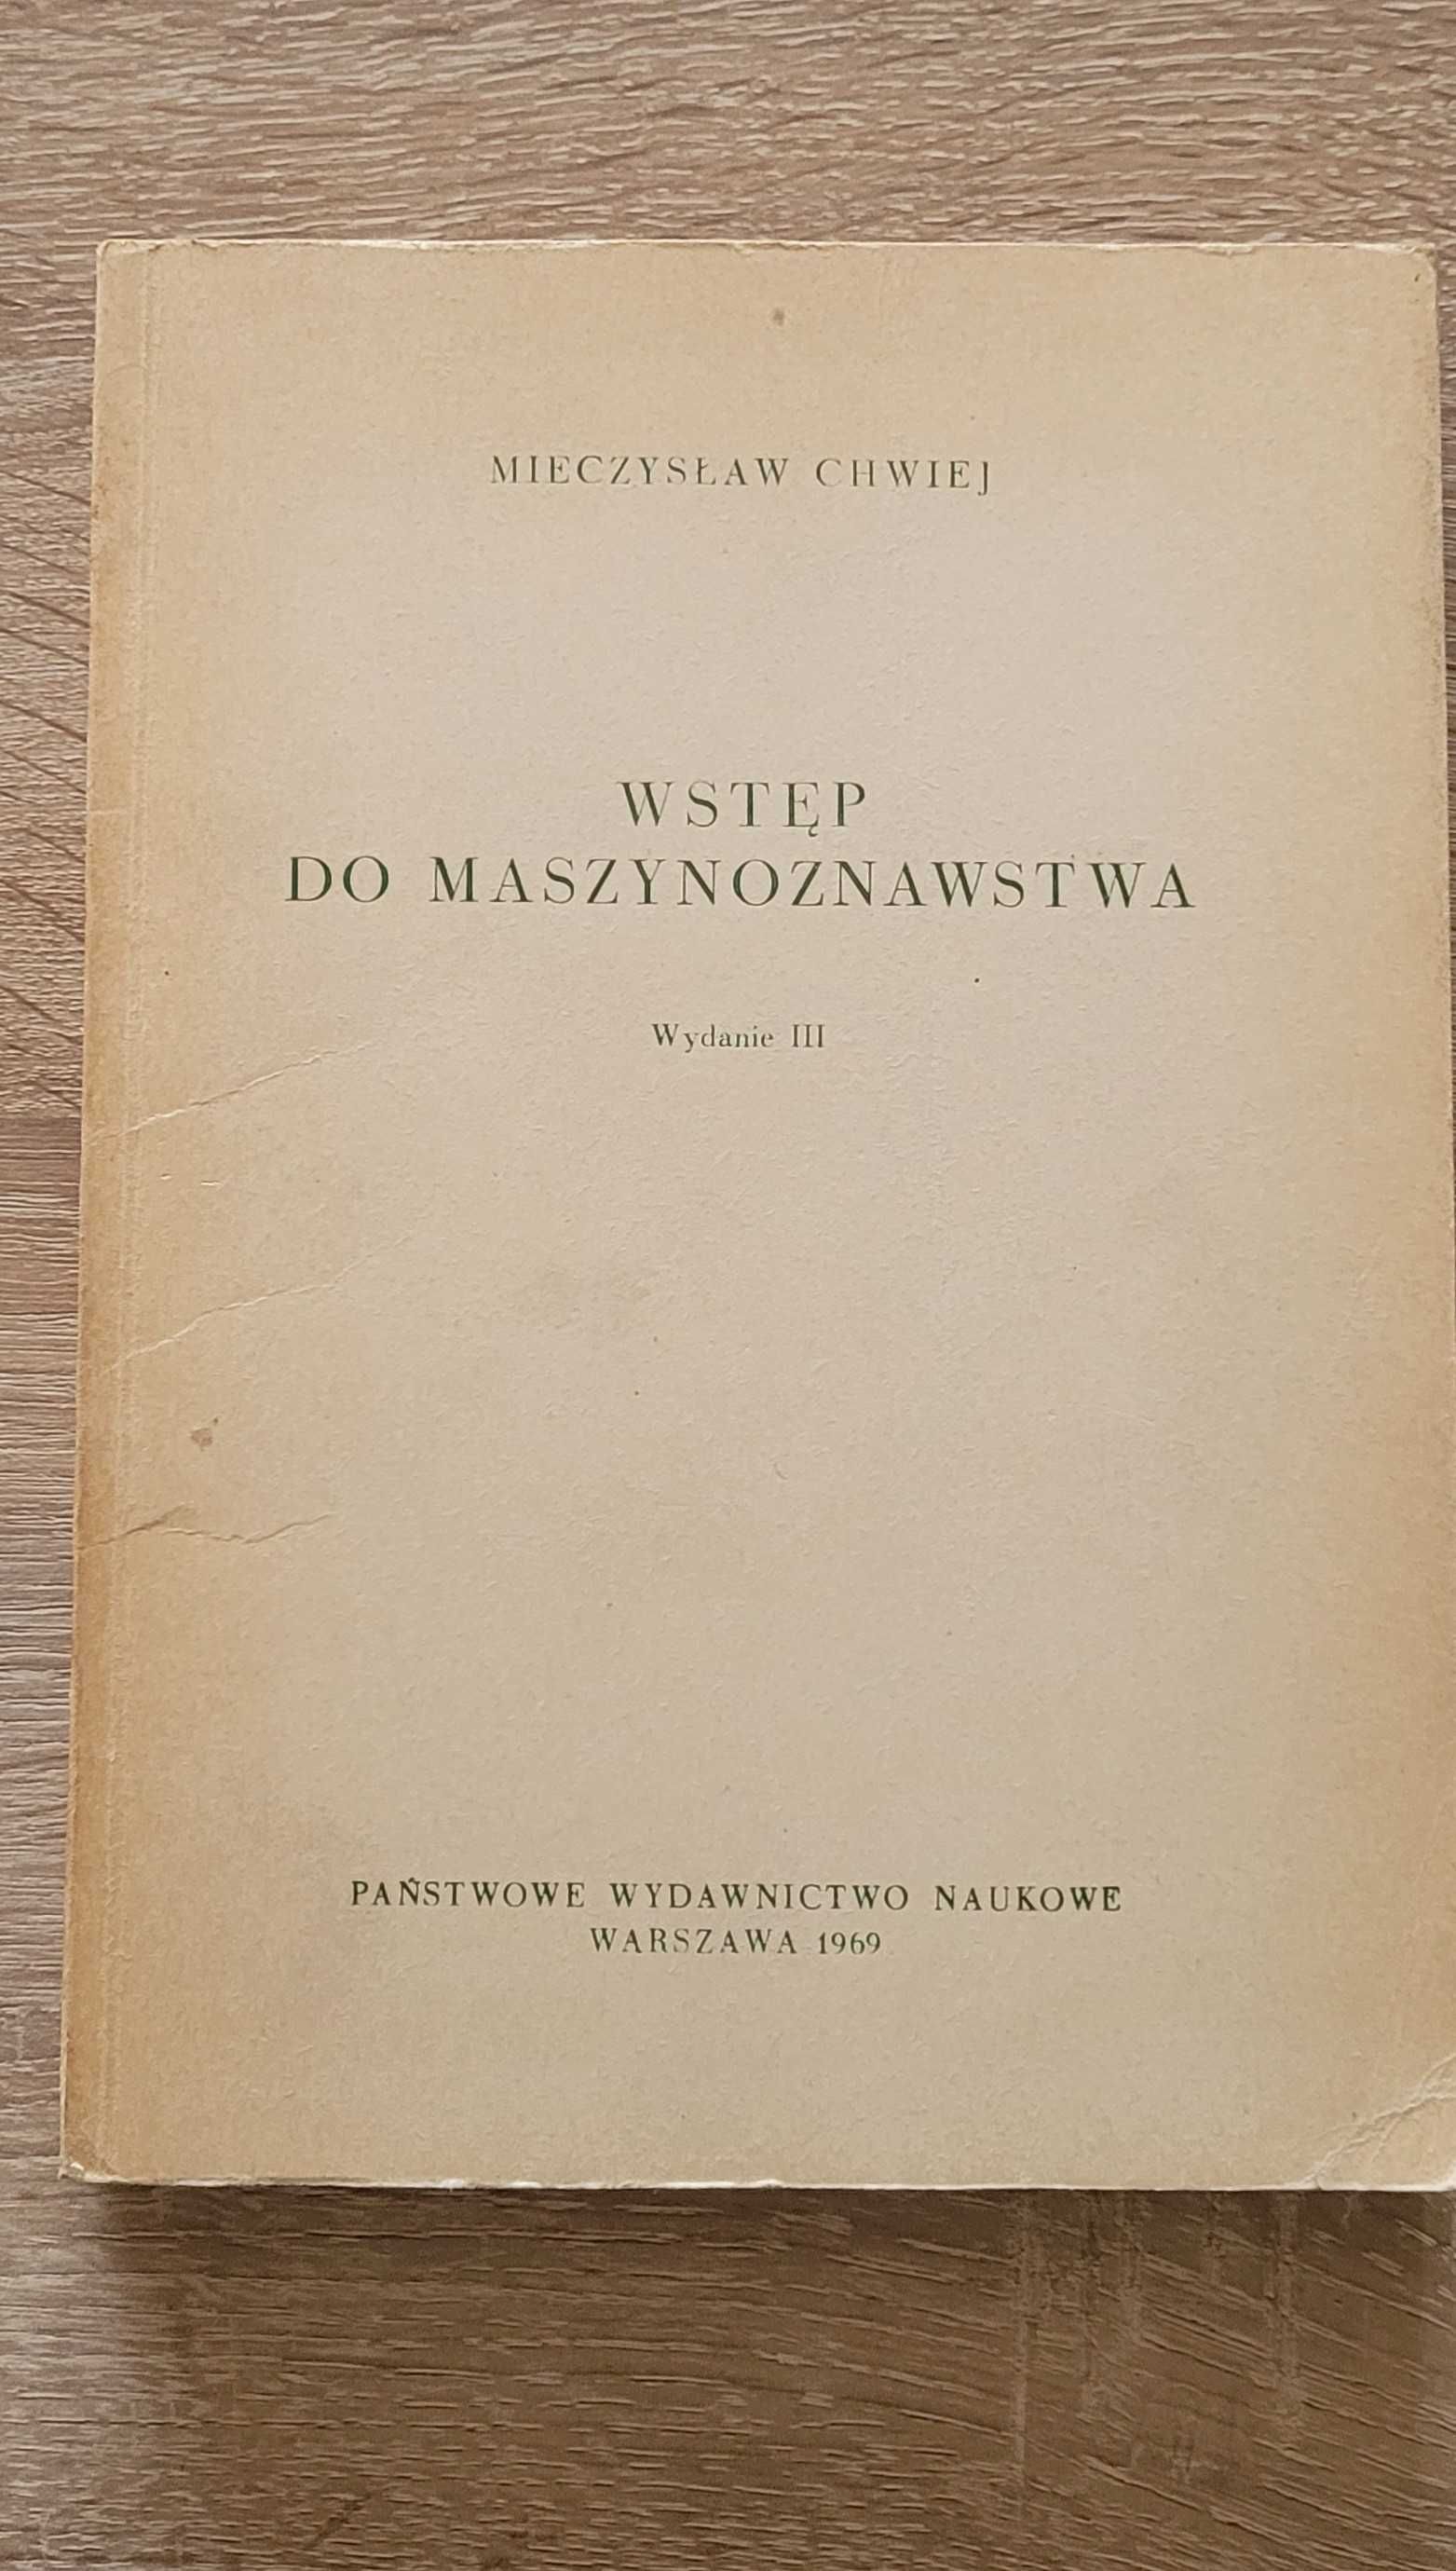 Książka "Wstęp do maszynoznawstwa" Mieczysław Chwiej